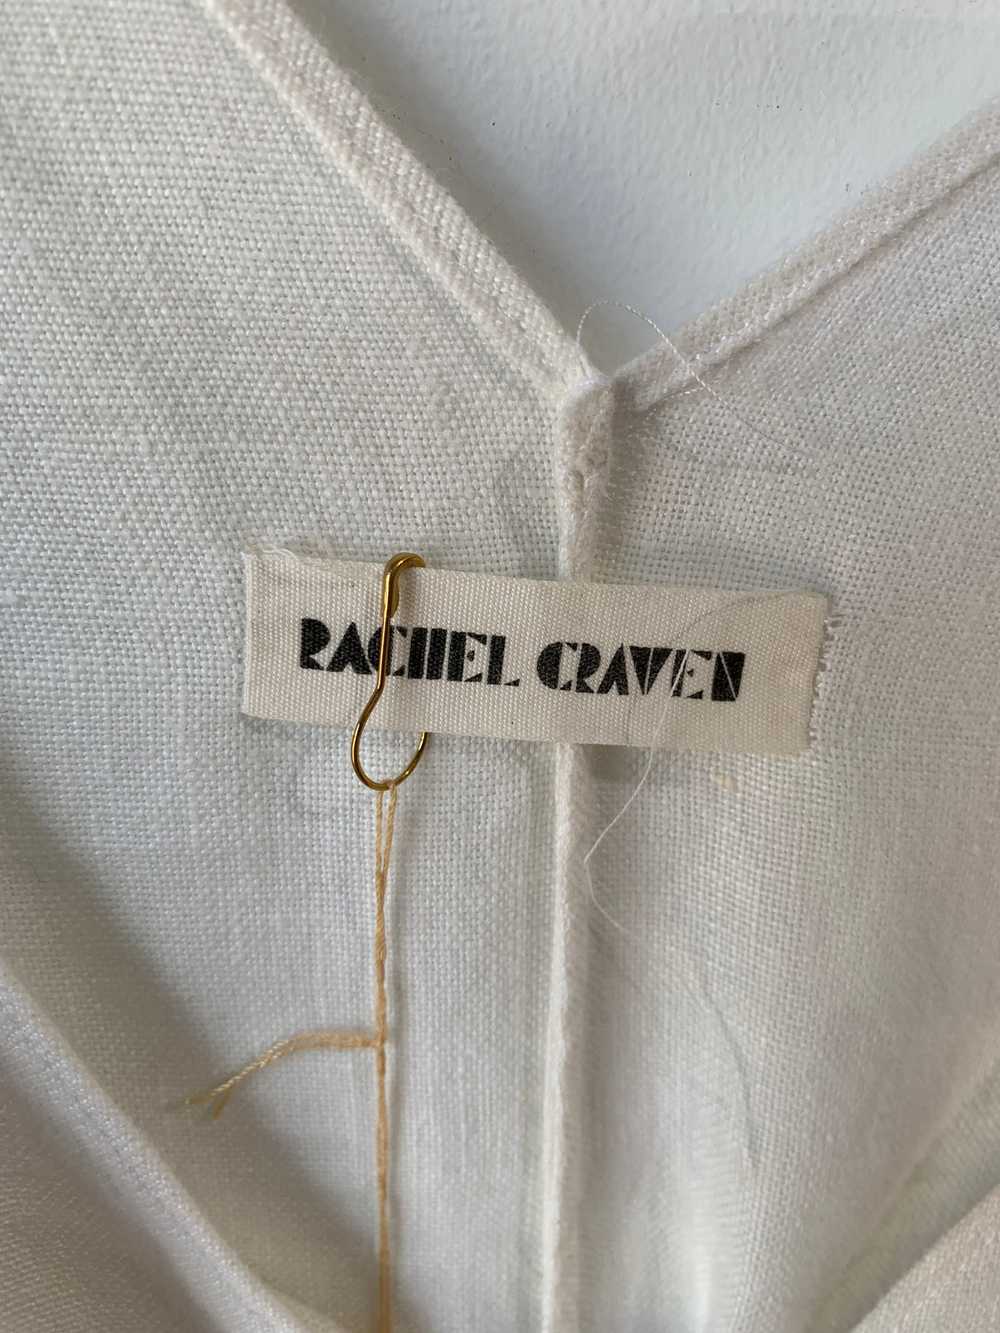 Rachel Craven White Linen Jumpsuit - image 3